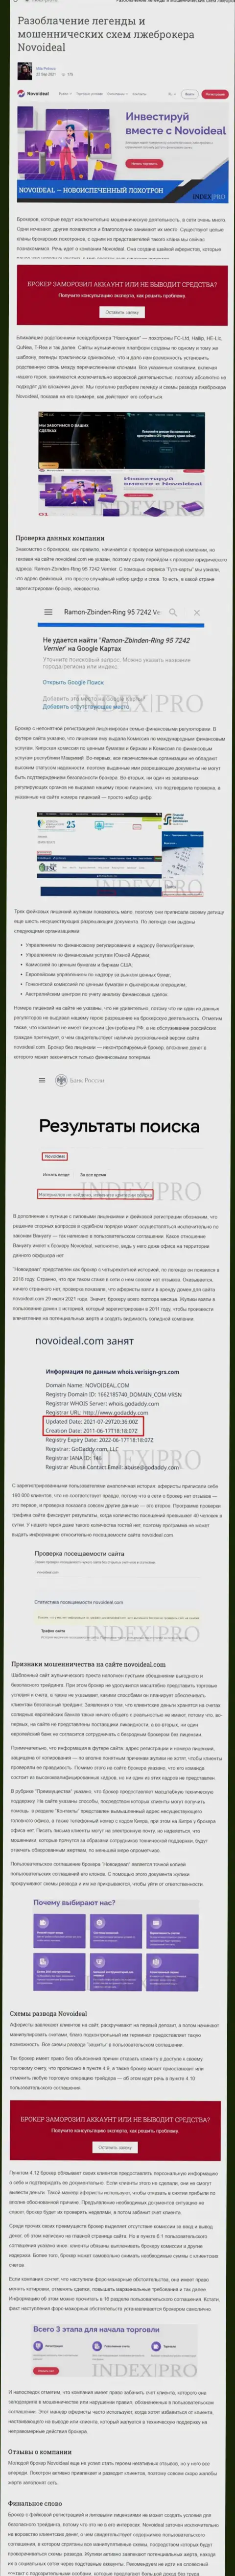 NovoIdeal - это ЛОХОТРОНЩИКИ !!! статья с доказательствами противозаконных уловок